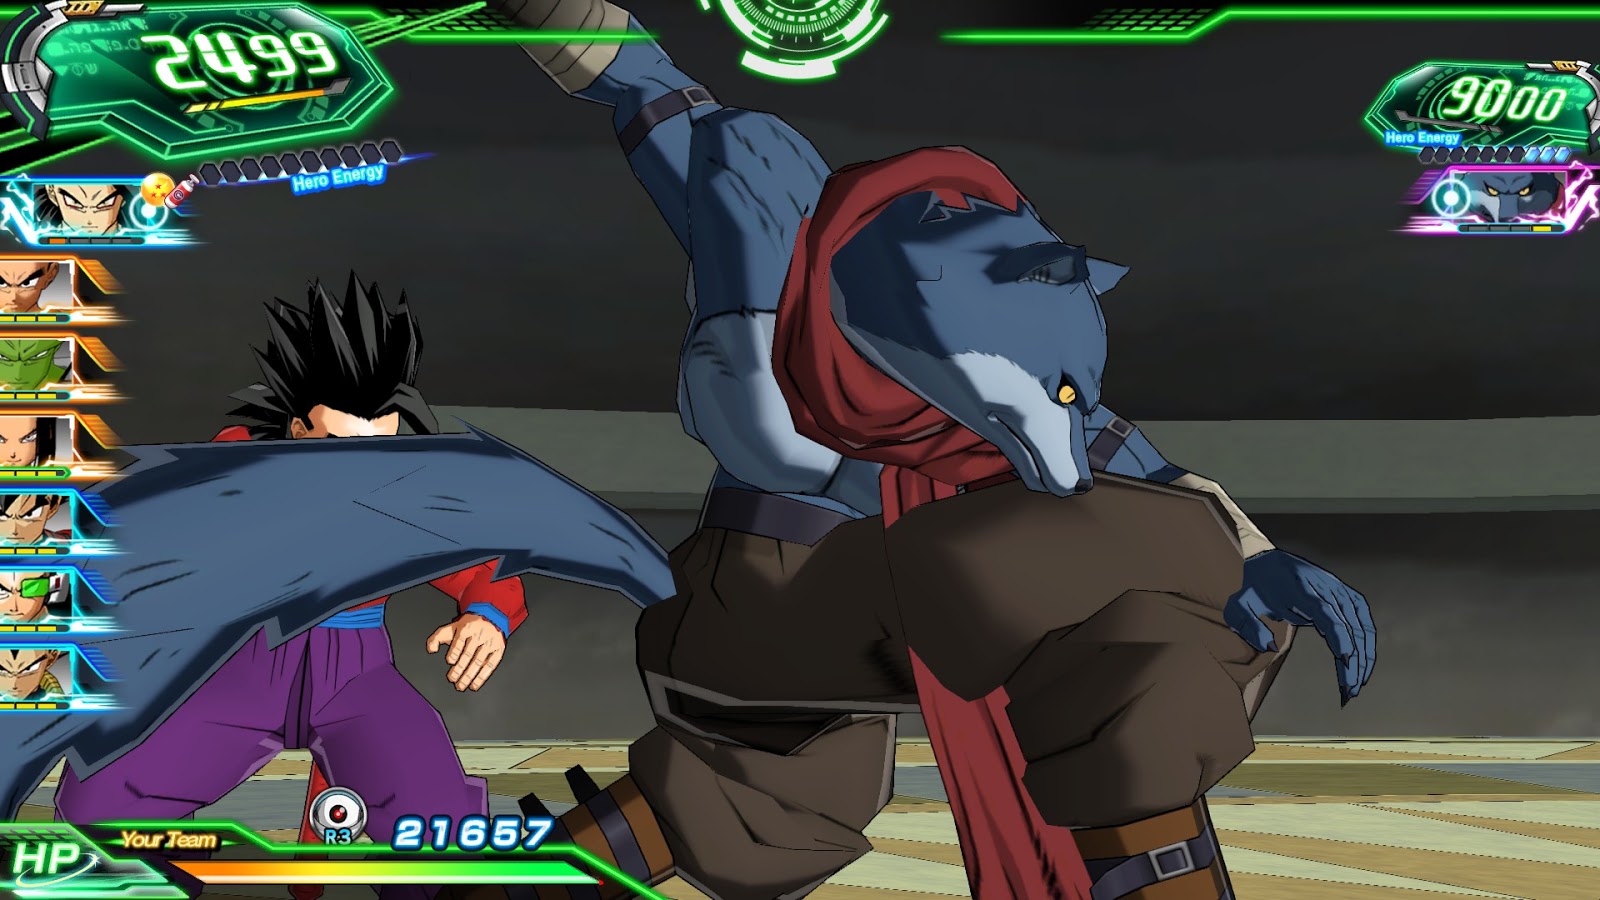 Dragon Ball Z - Libere todo o seu poder neste jogo de luta para Mega Drive!